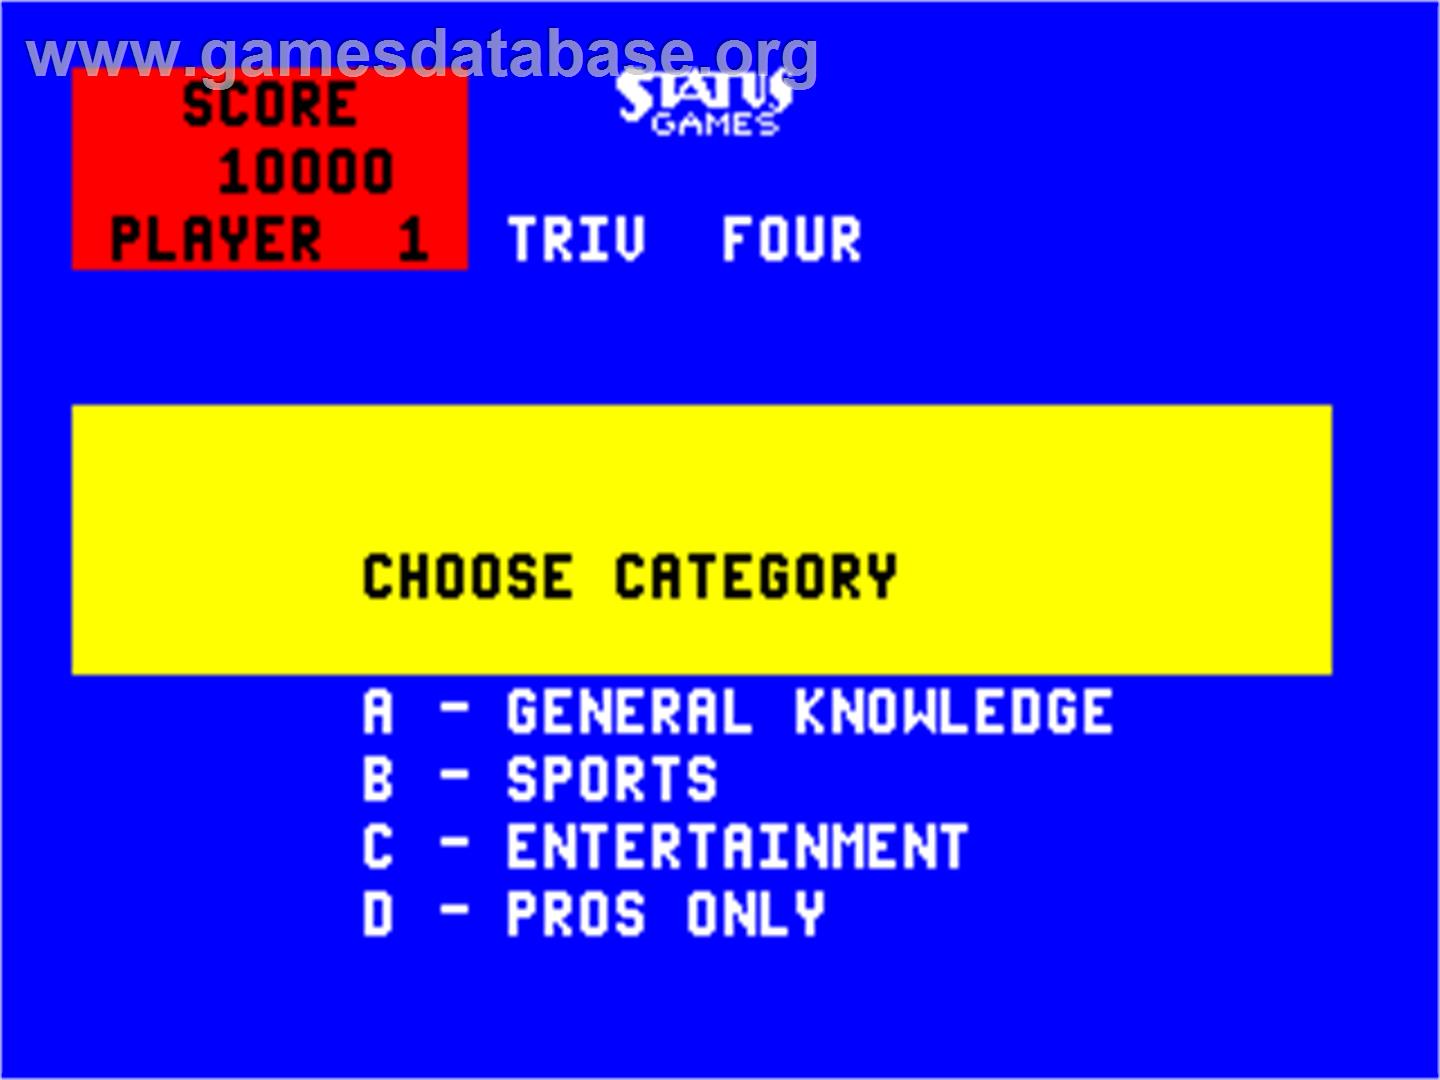 Triv Four - Arcade - Artwork - Select Screen